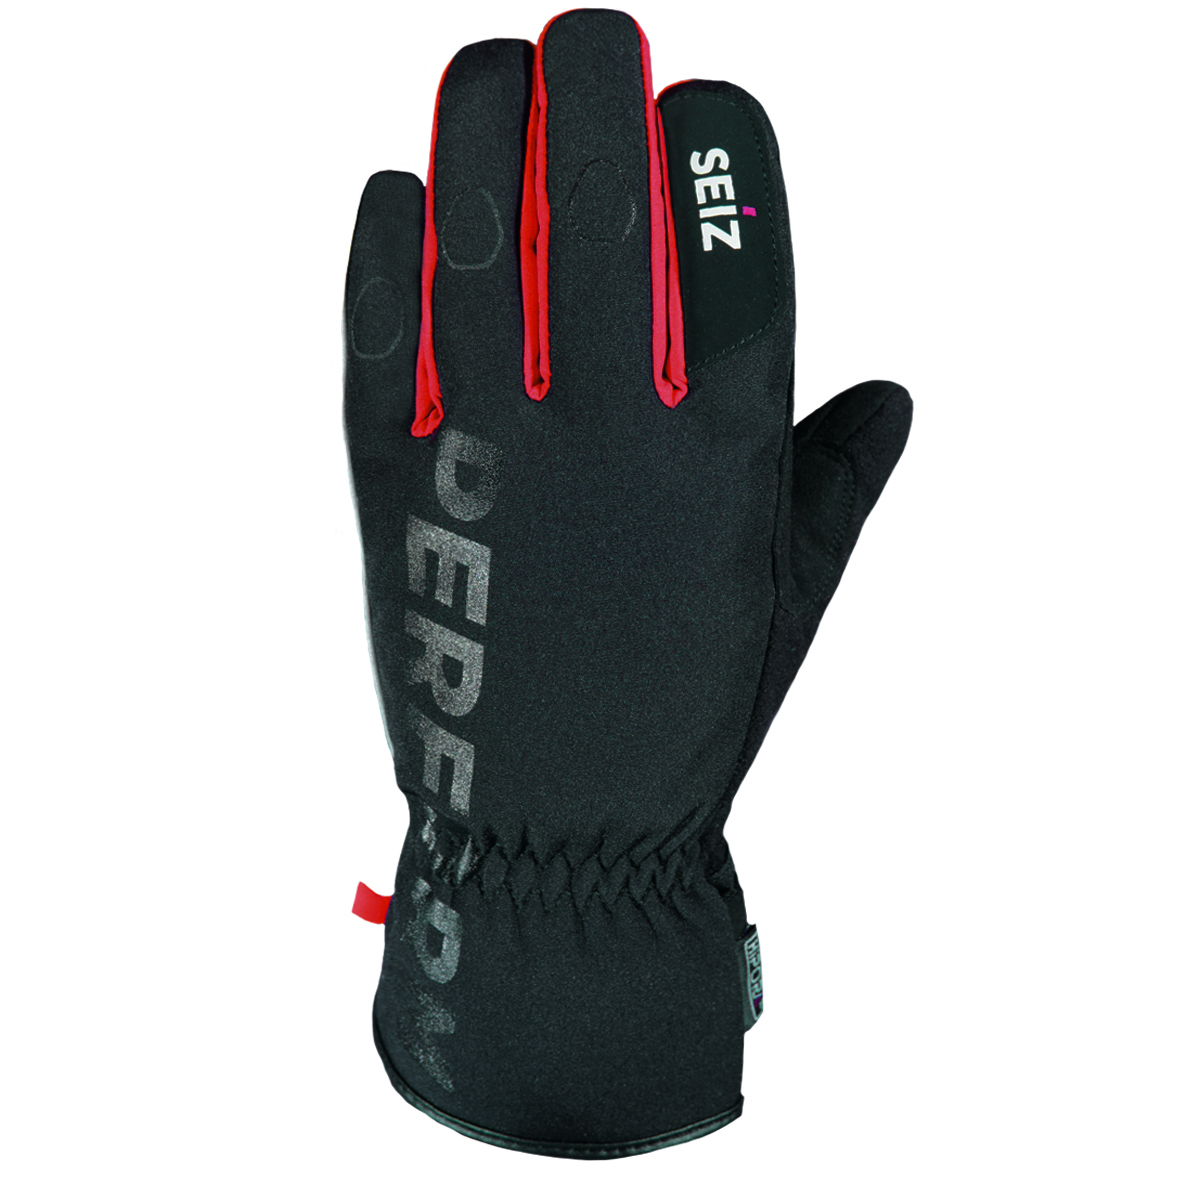 Seiz Winterhandschuhe RS Winter Handschuhe Schnee Unisex 800386 schwarz